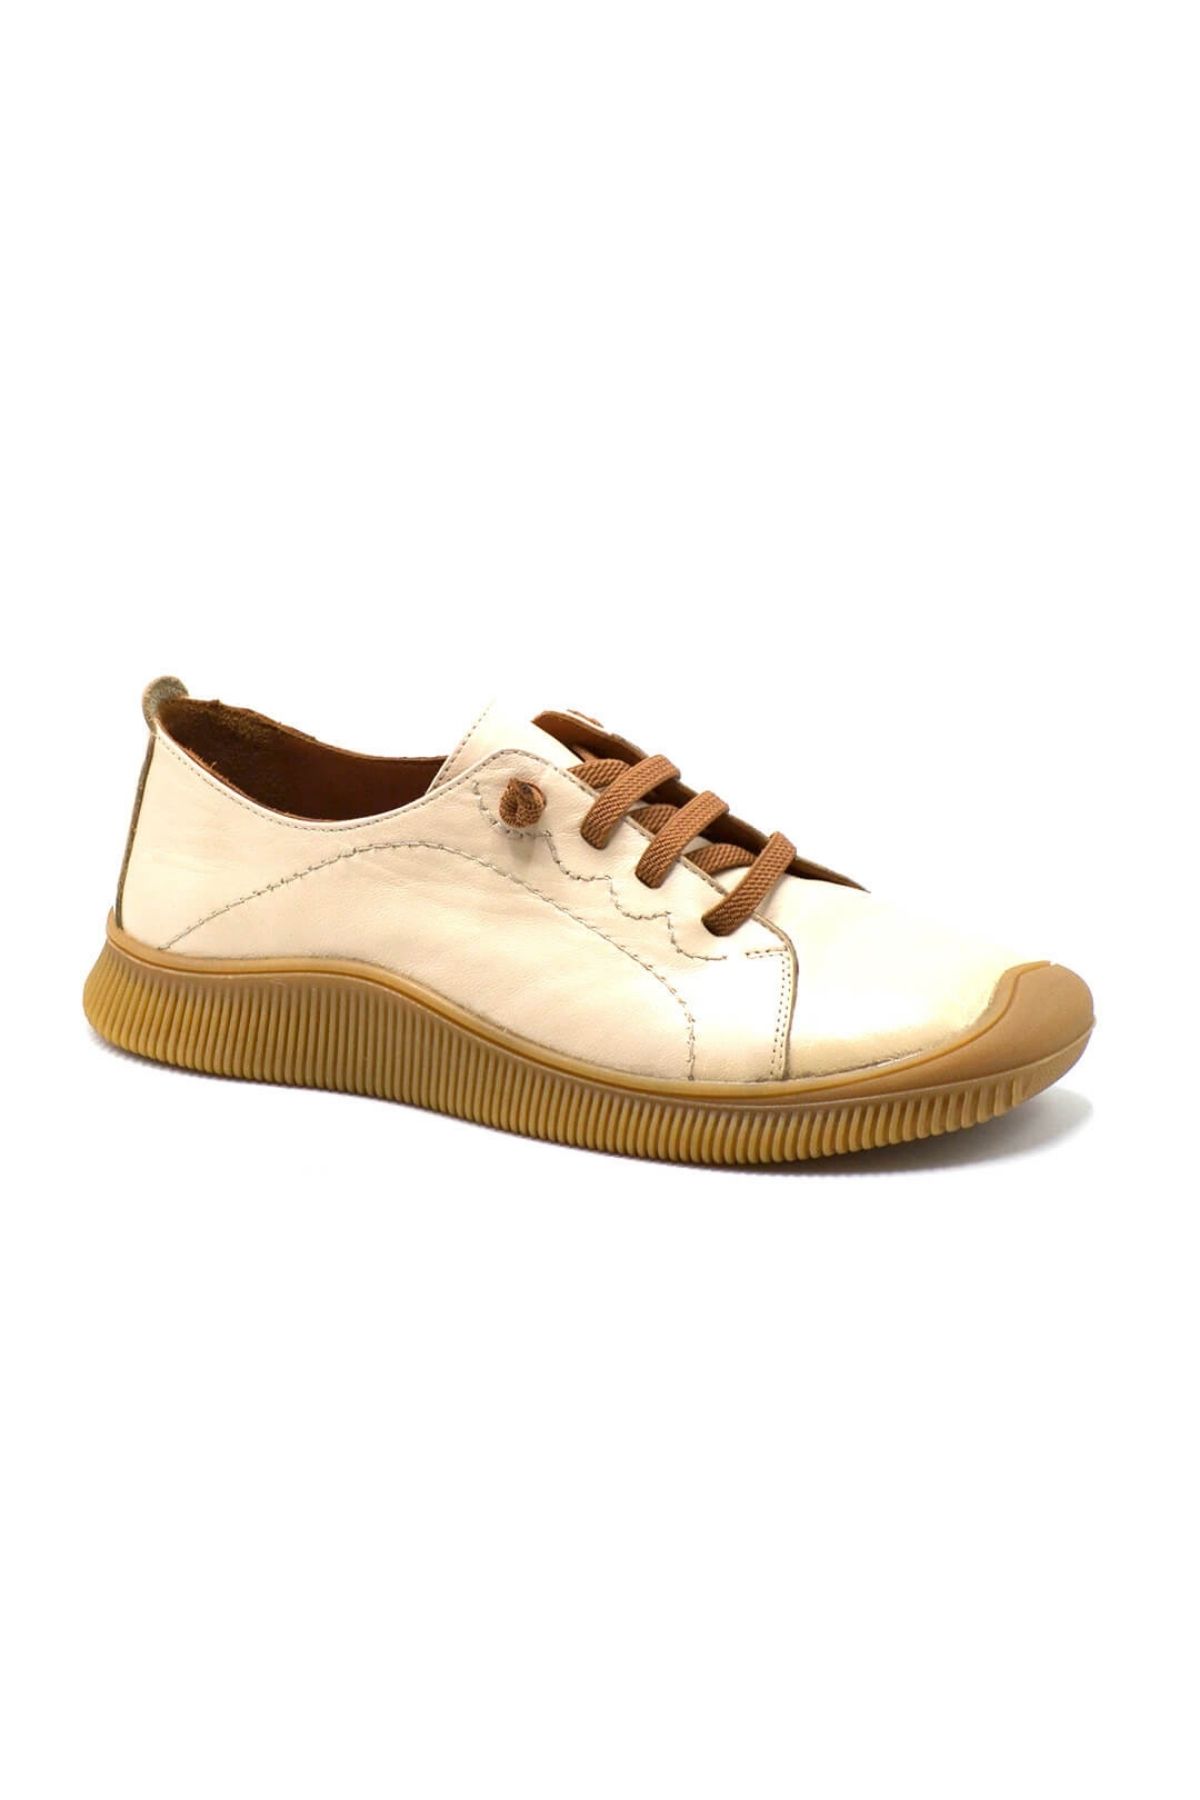 Kadın Comfort Deri Ayakkabı Bej 2413504Y - Thumbnail